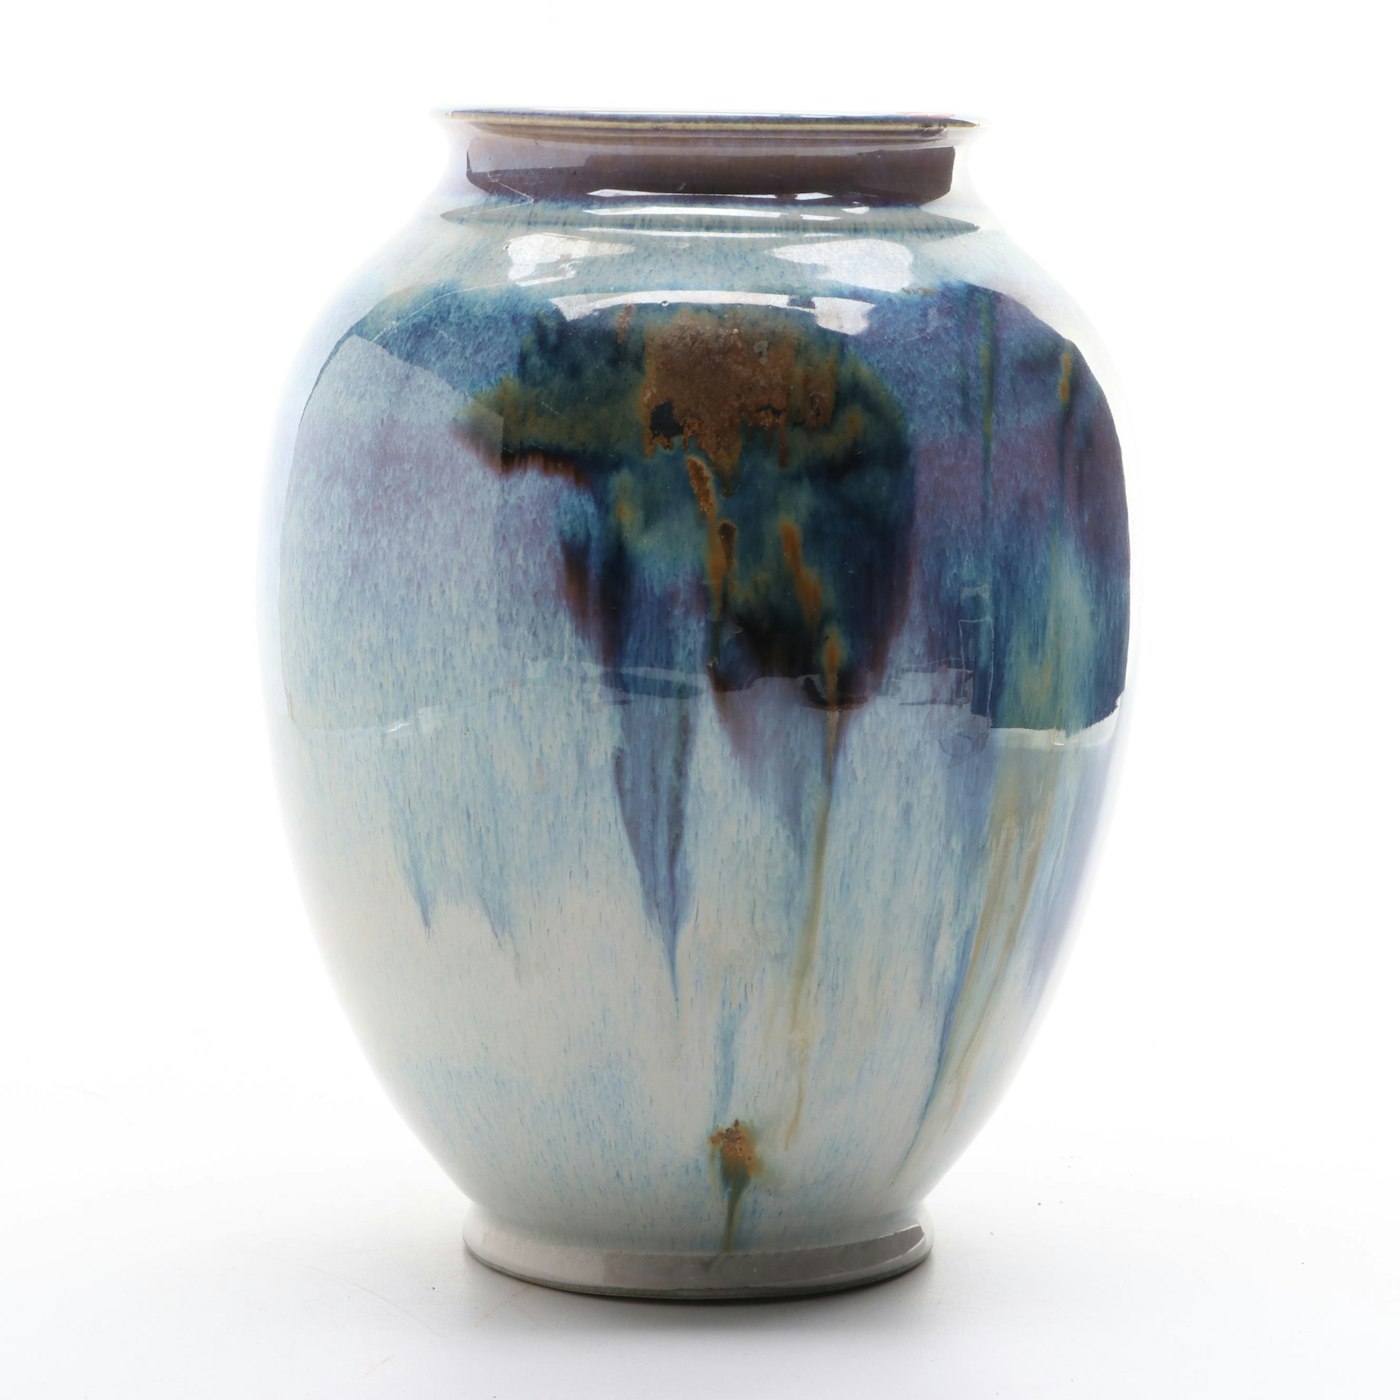 Ulla Merz Wheel Thrown Glazed Porcelain Art Pottery Vase | EBTH